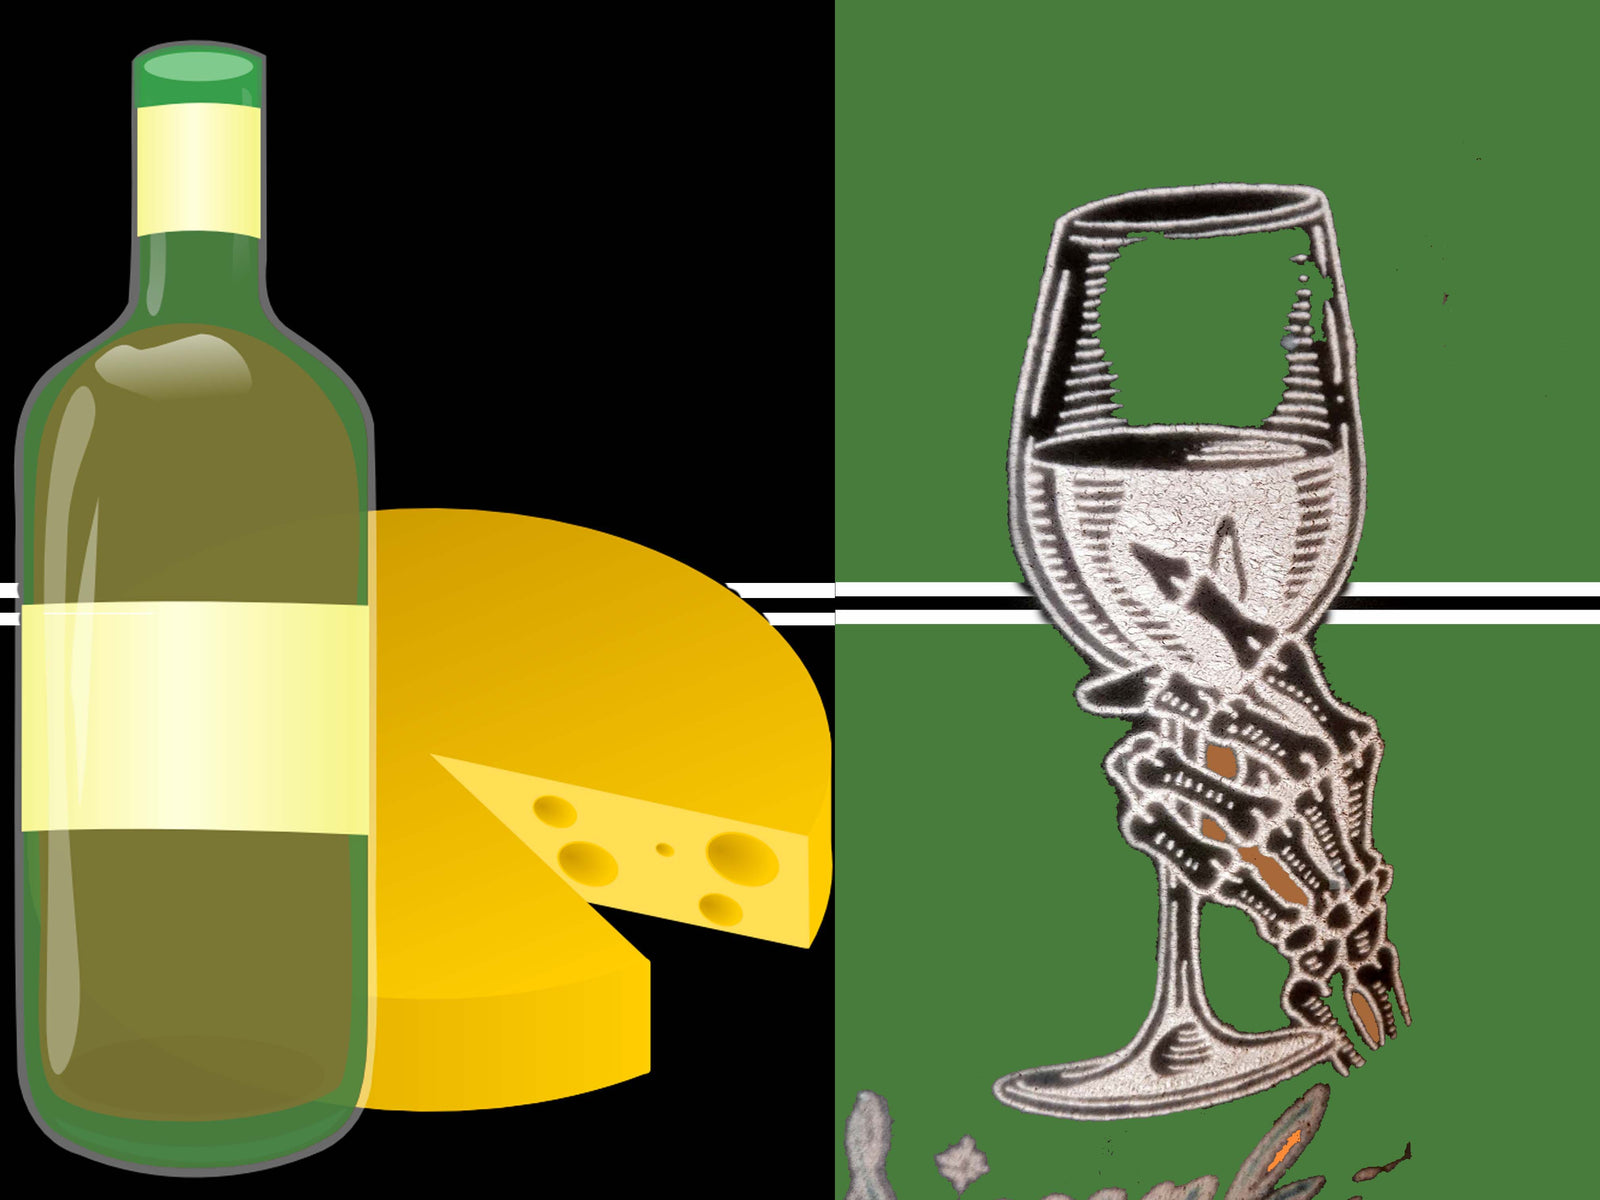 Rượu: Được ủ trong những thùng gỗ vàng óng, hương vị tinh tế của những chai rượu này sẽ khiến bạn thèm muốn chúng ngay lập tức. Hãy cùng đón xem hình ảnh để khám phá thêm về những loại rượu độc đáo này.